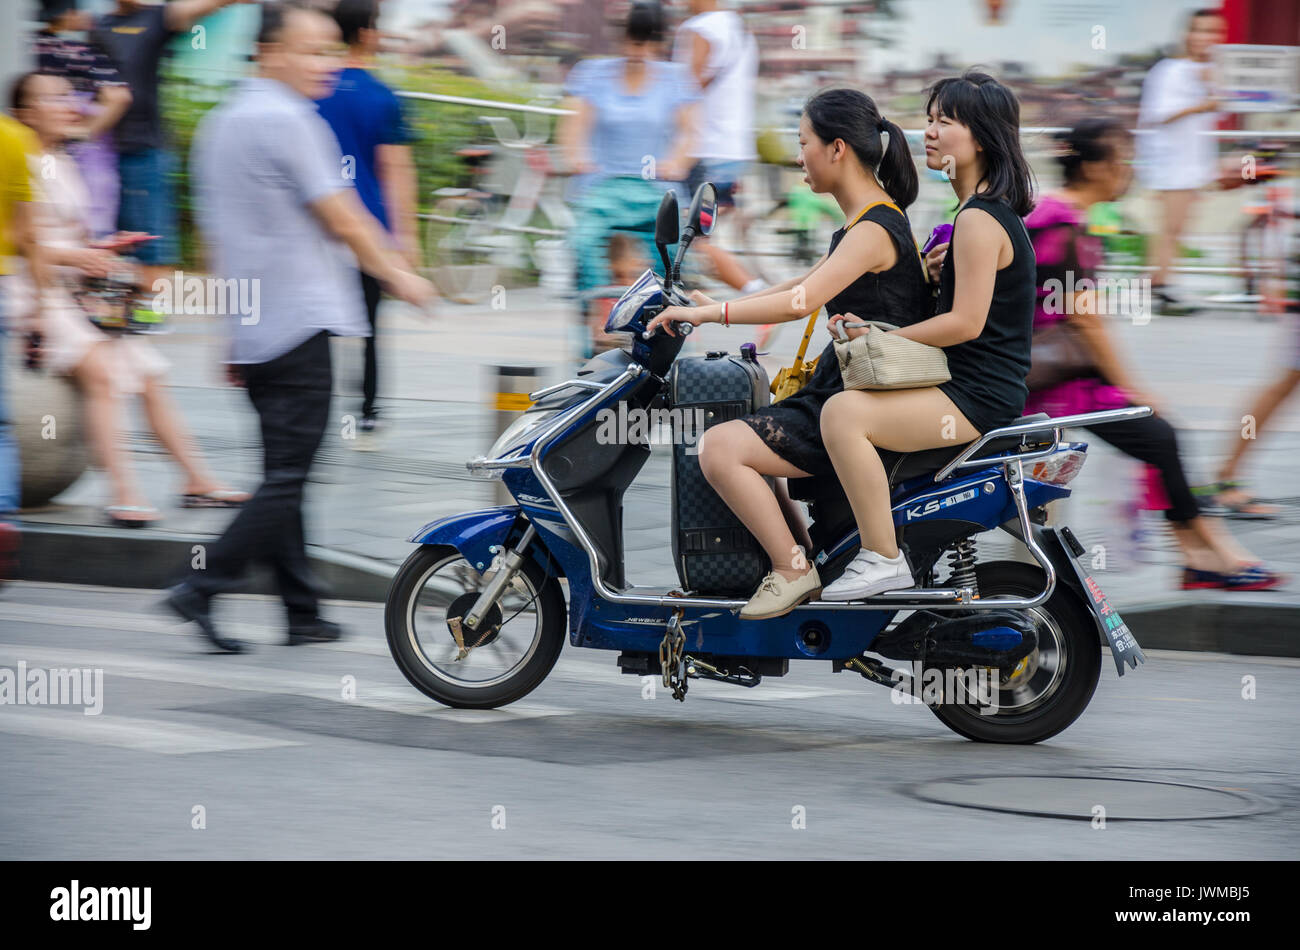 Deux dames chinoises sur un cyclomoteur scooter électrique style approche un passage pour piétons.Le pilote a une valise entre ses jambes. Banque D'Images